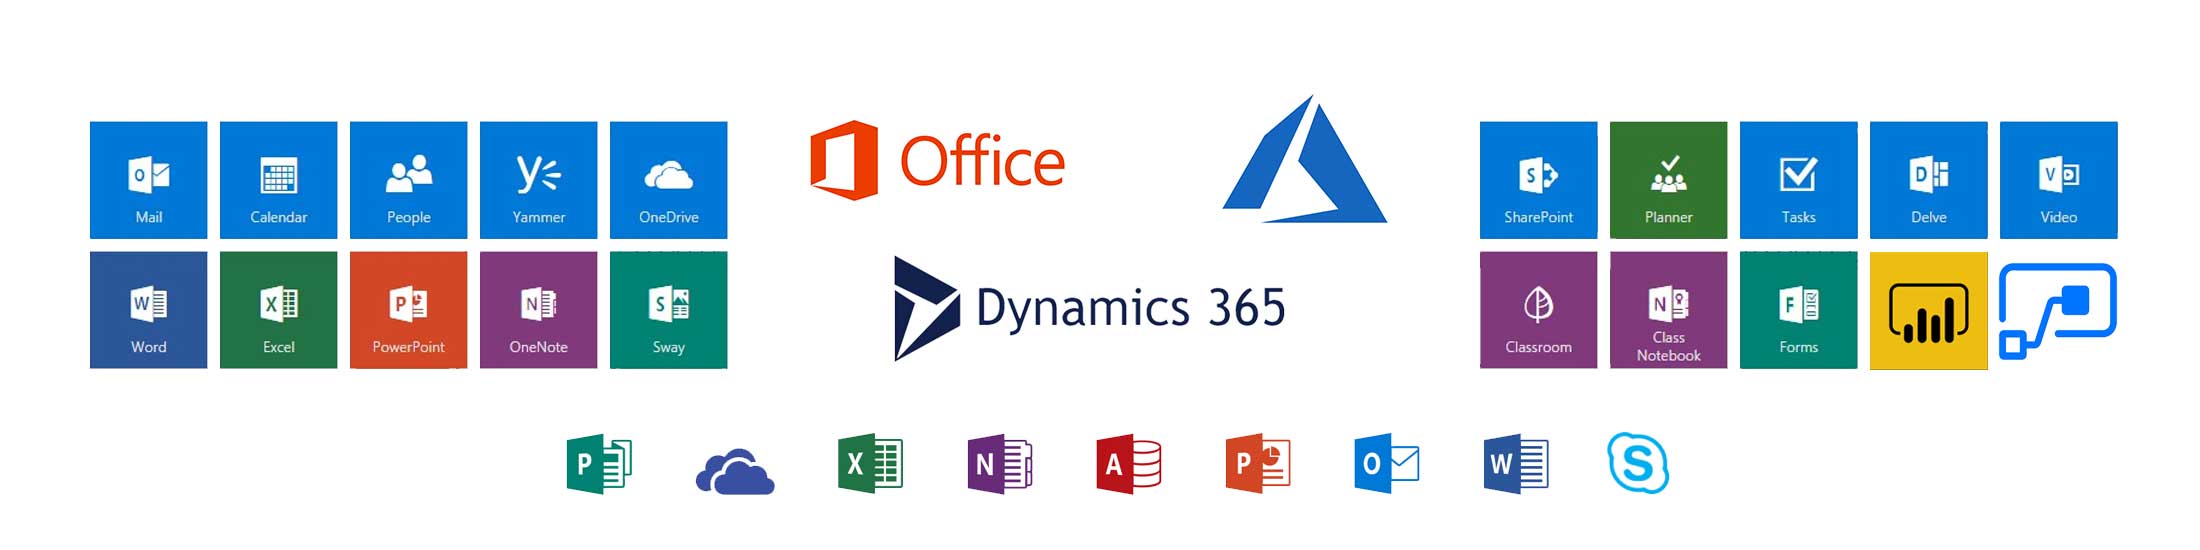 Produse Office 365